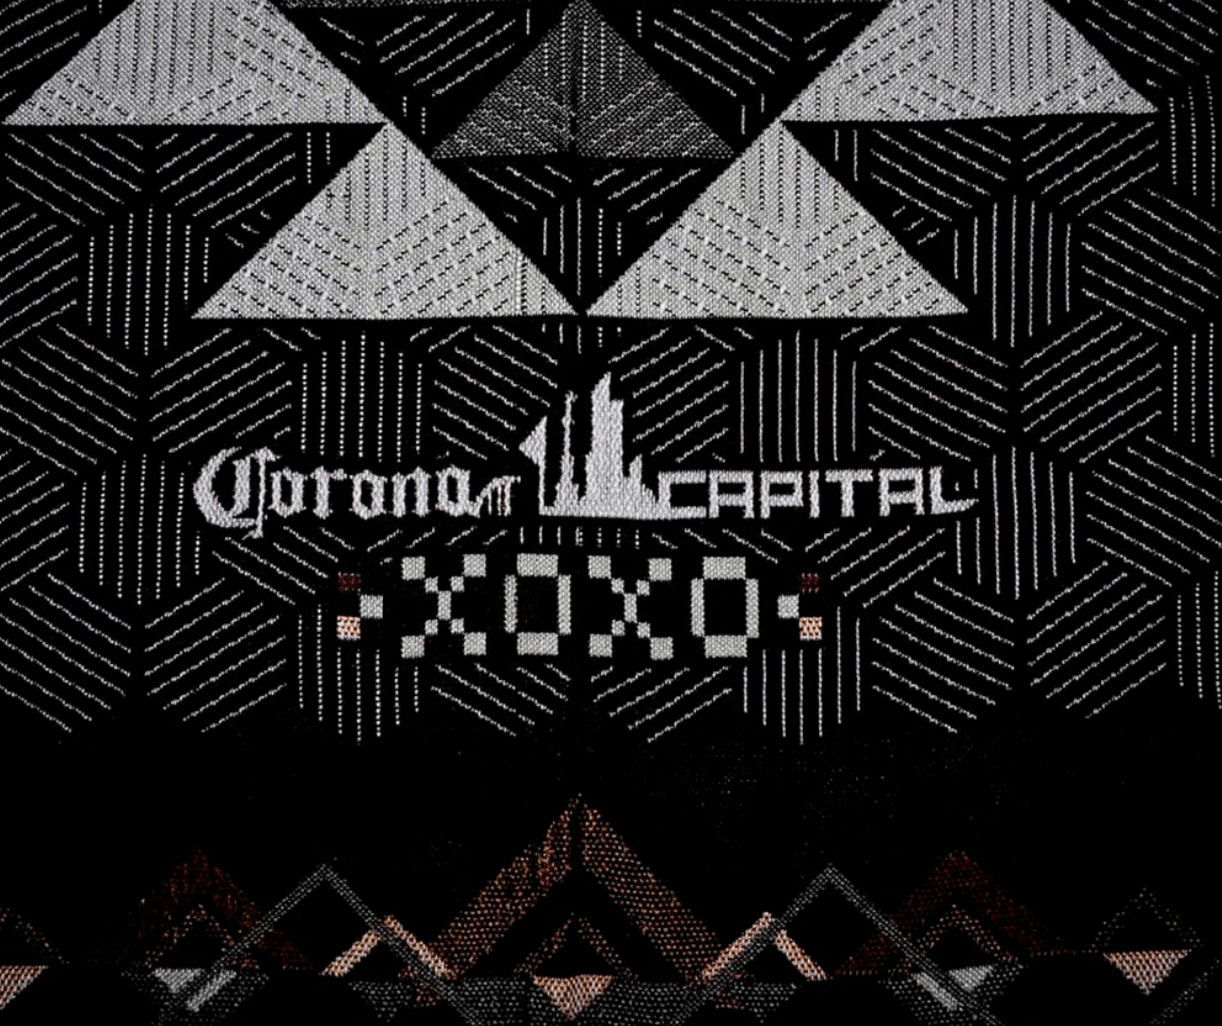 Corona Capital lanza un poncho conmemorativo para su edición 2020 y con ayuda de artesanos de Tlaxcala